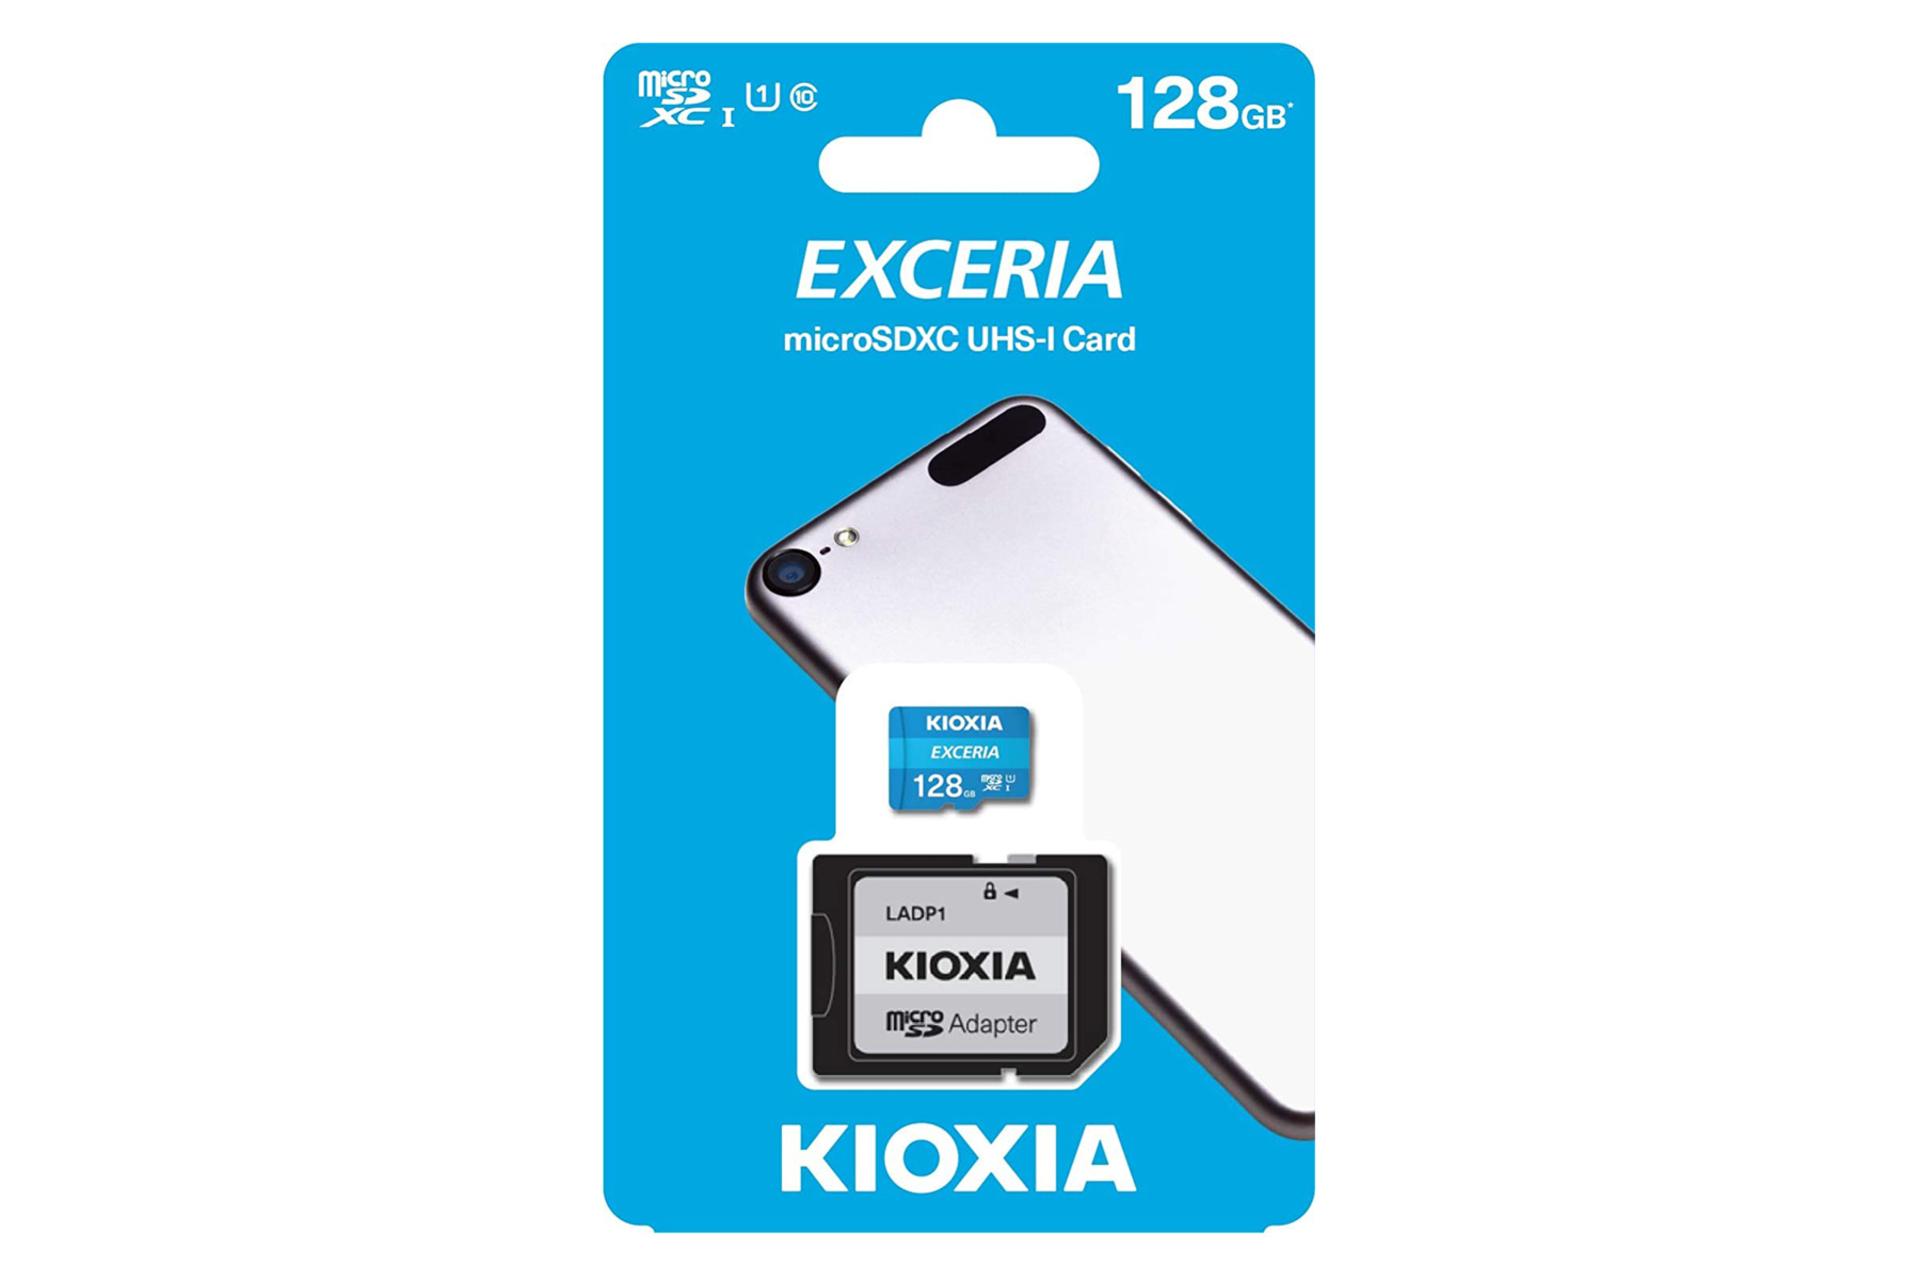 کارت حافظه کیوکسیا microSDXC با ظرفیت 128 گیگابایت مدل EXCERIA کلاس 10 با جعبه